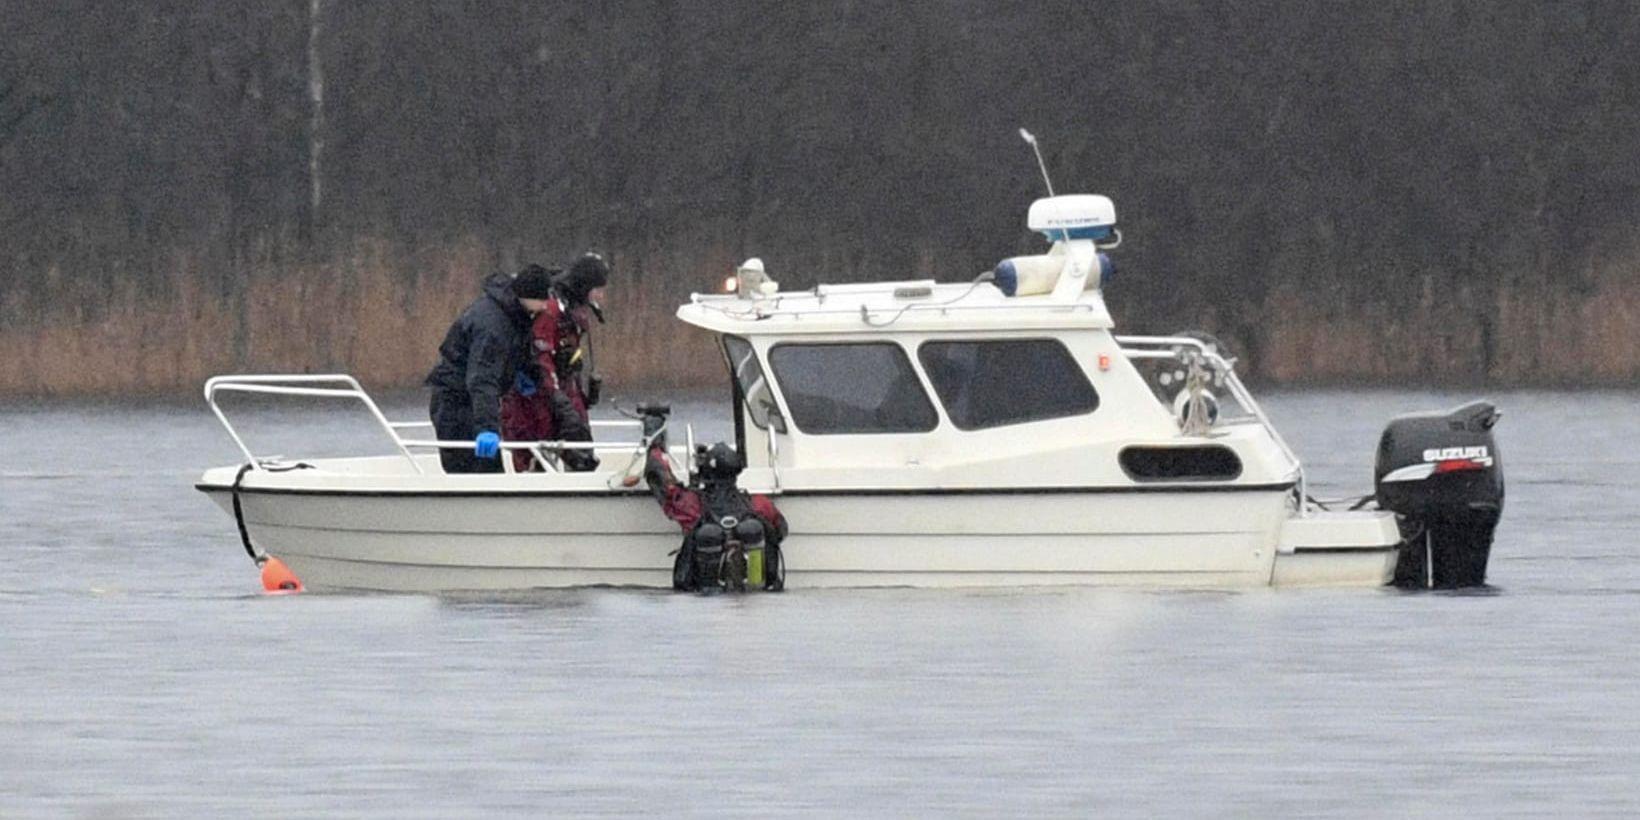 Polisens dykare söker för tredje dagen i Ivösjön efter den turnéledare som försvann 1999. Turnéledaren, som var 37 år gammal då han försvann, dödförklarades 2006 och polisen misstänker att han är mördad.